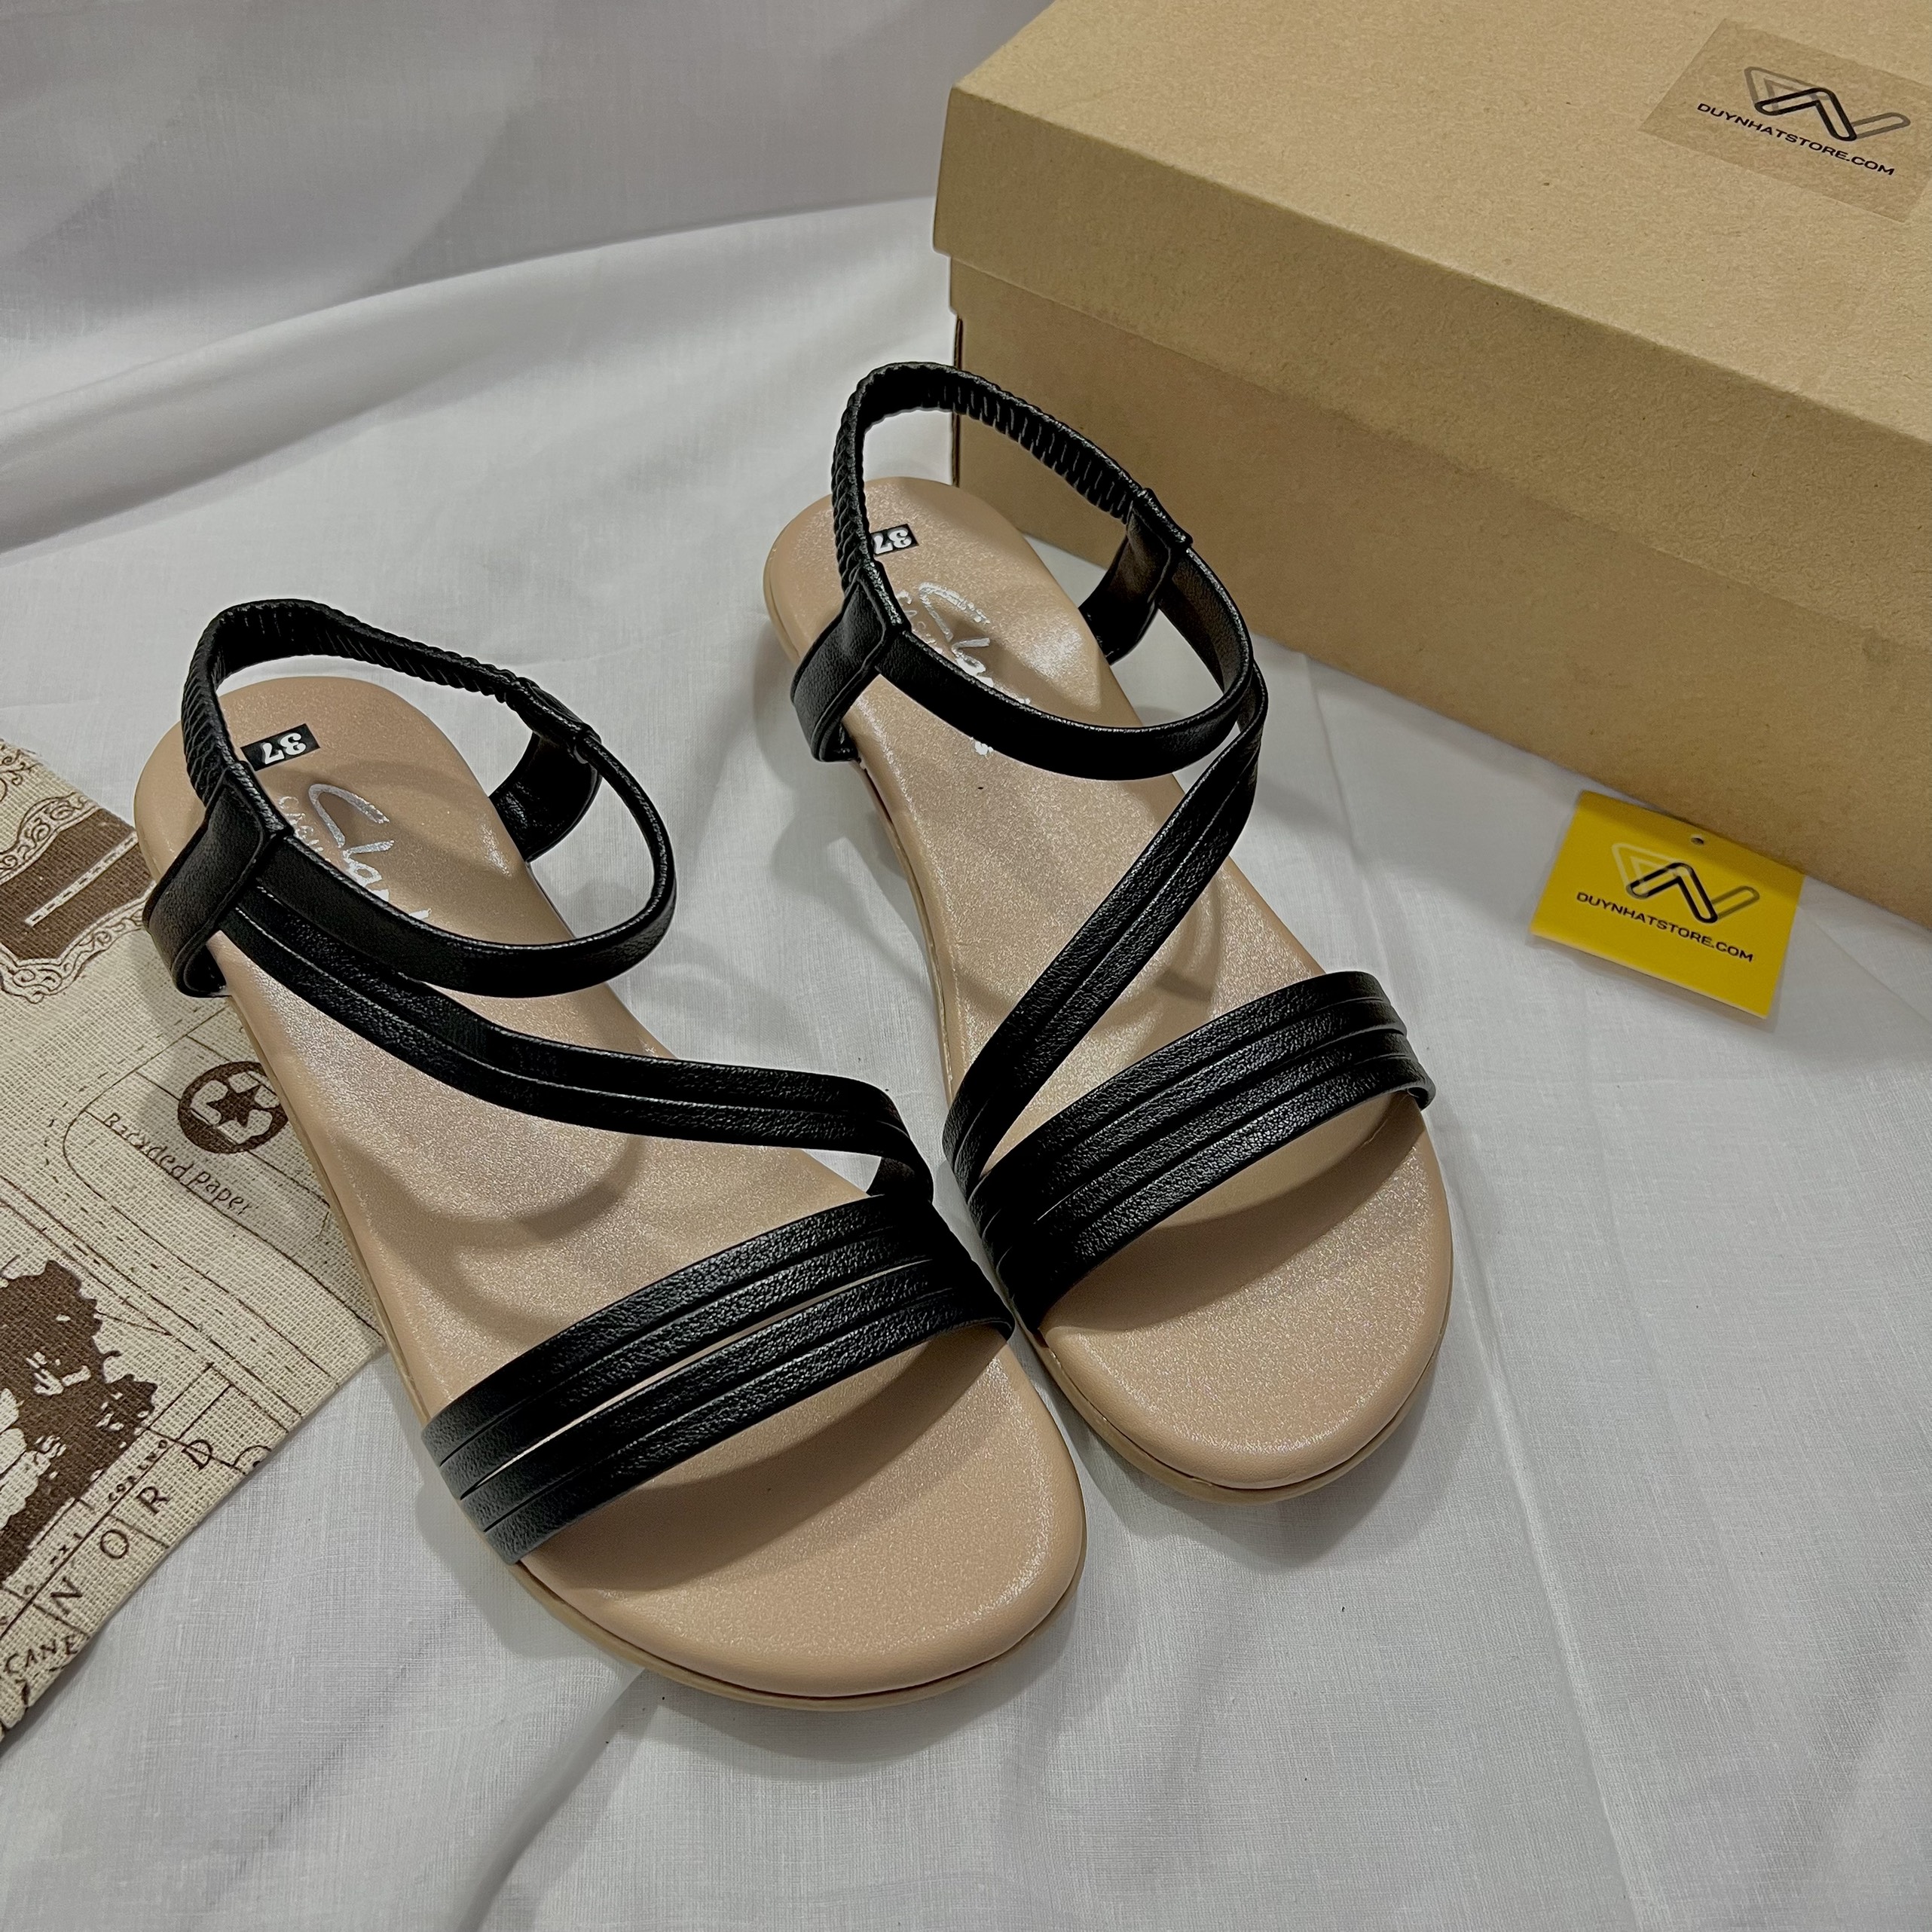 Giày Sandal Nữ Quai Ngang Dây Chéo Cao 2cmBánh Mì Duy Nhật Store Phối Khóa Da Mờ Học Sinh Đi Học Đẹp Đơn Giản Bền Đế Cao